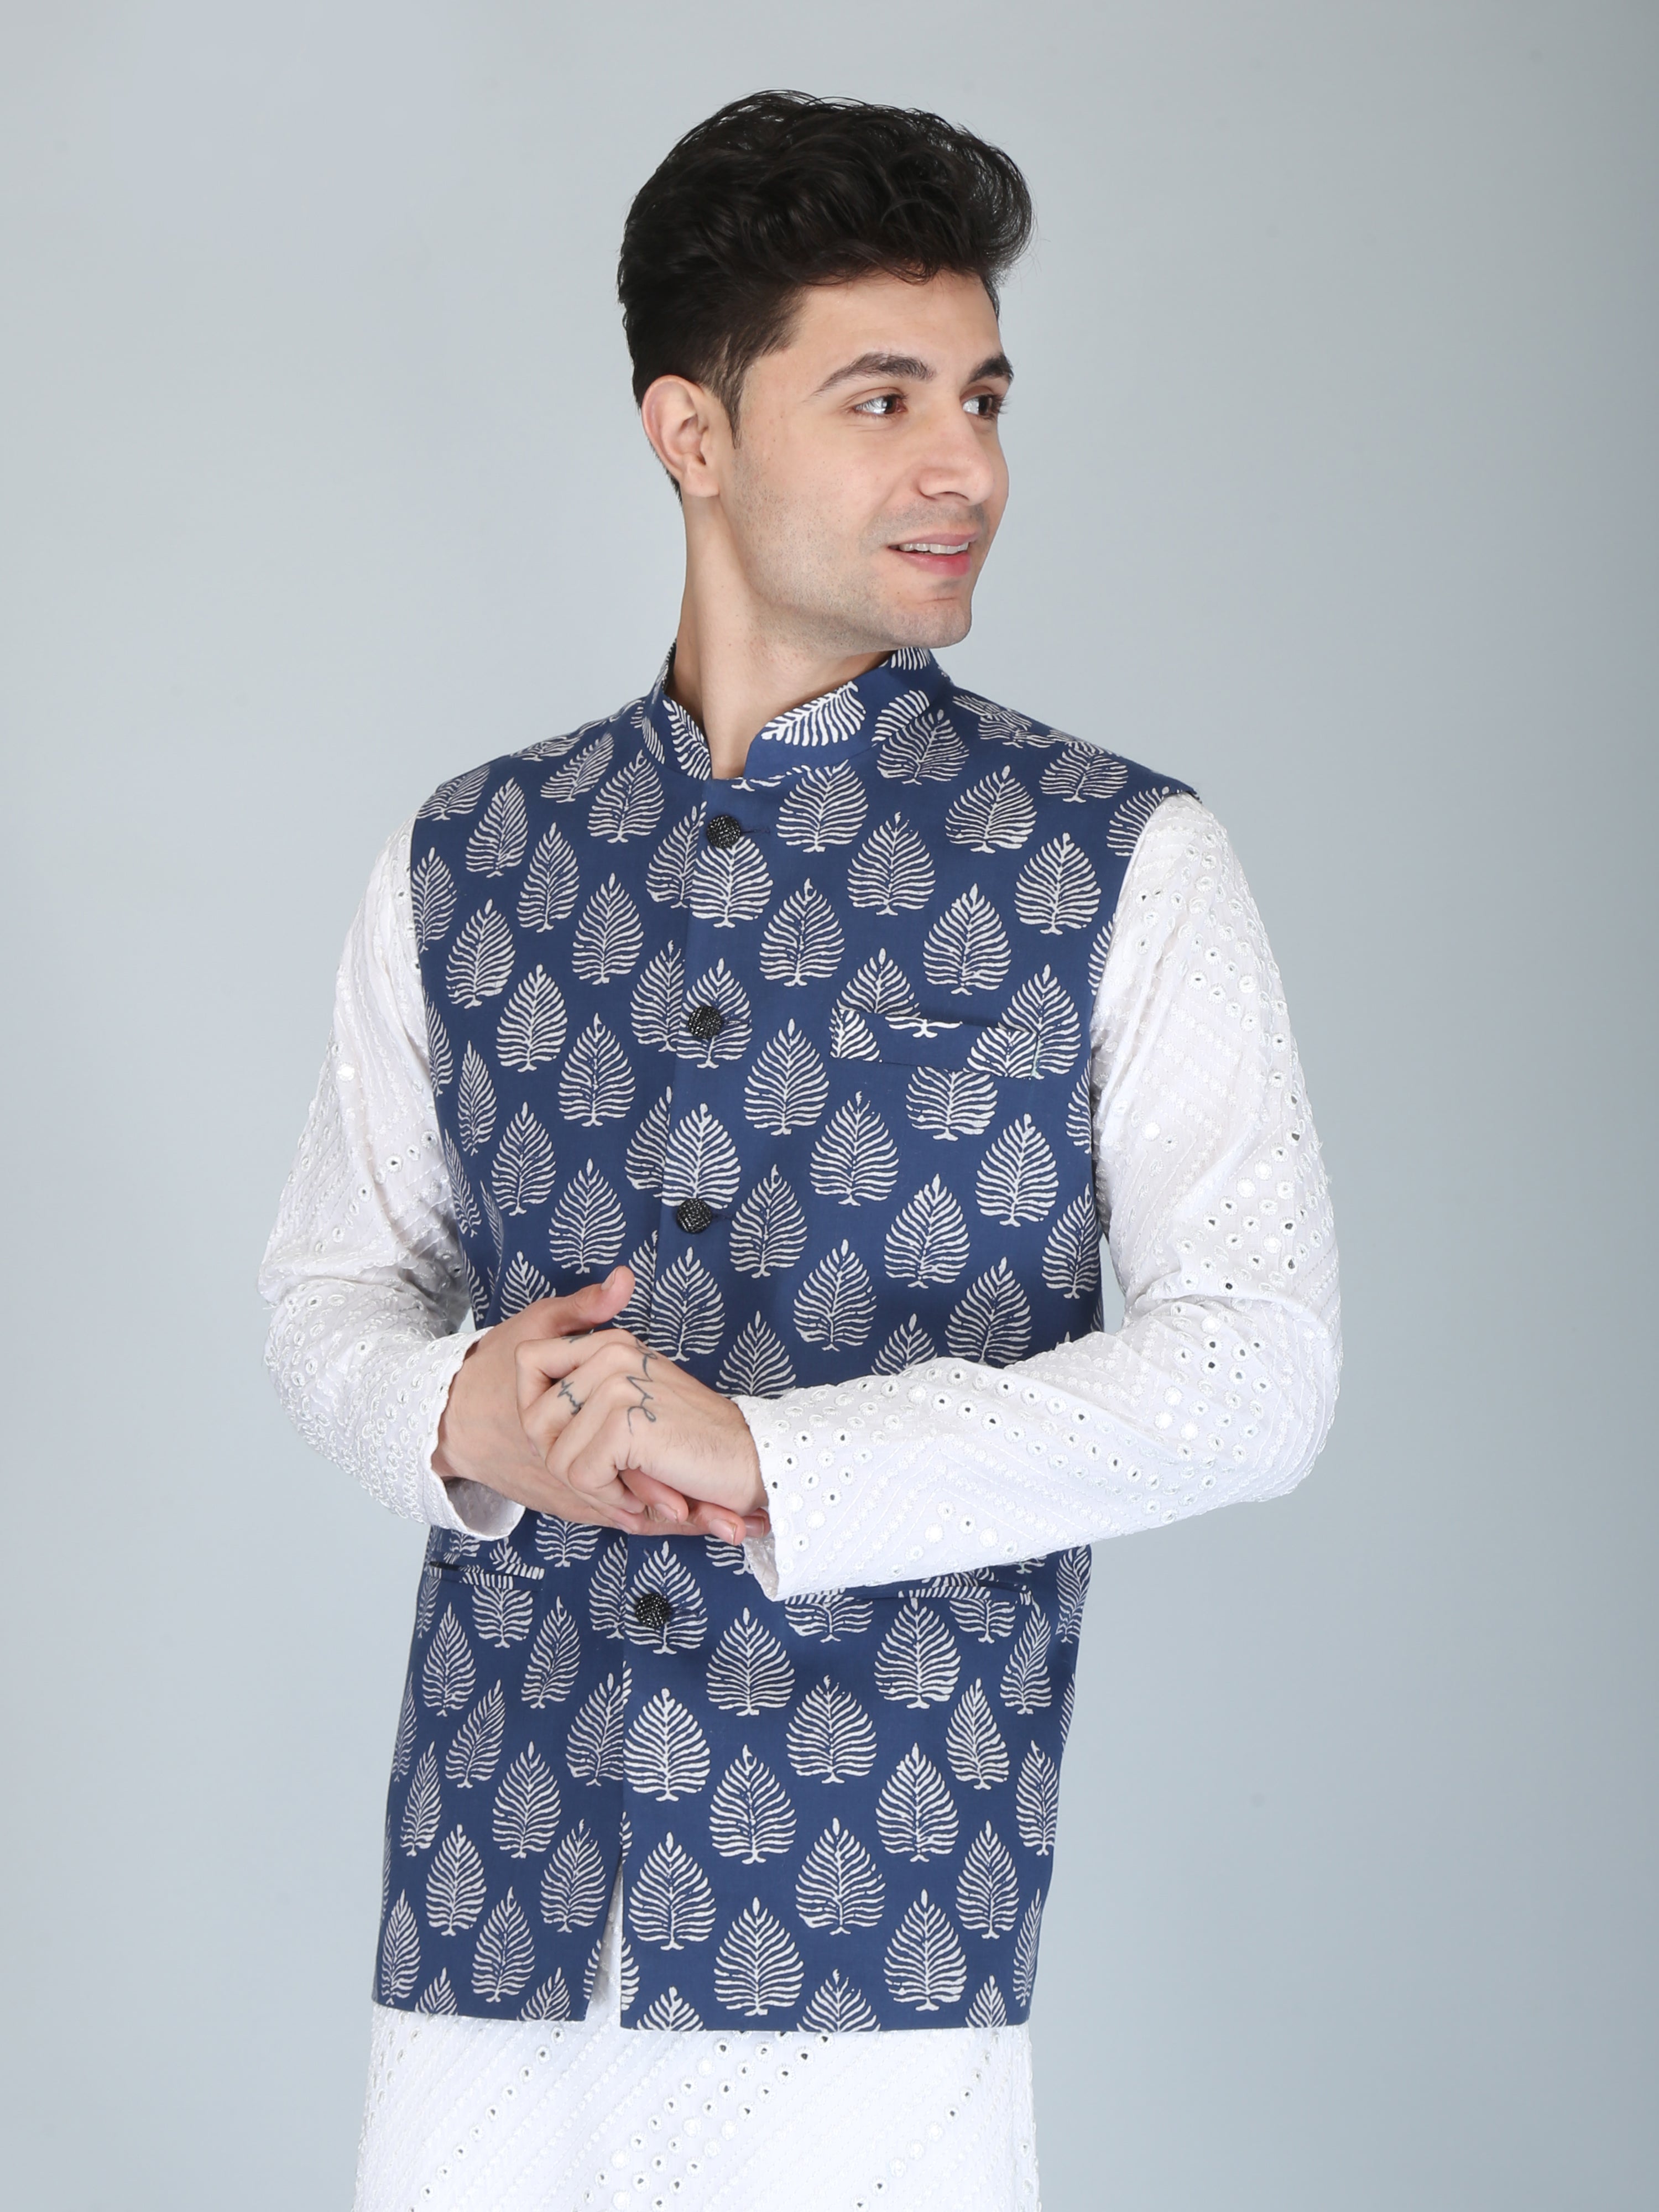 Firangi Yarn Cotton Block Printed Nehru Jacket Indigo Motif For Haldi, Mehendi, Sangeet, Wedding, Diwali and More